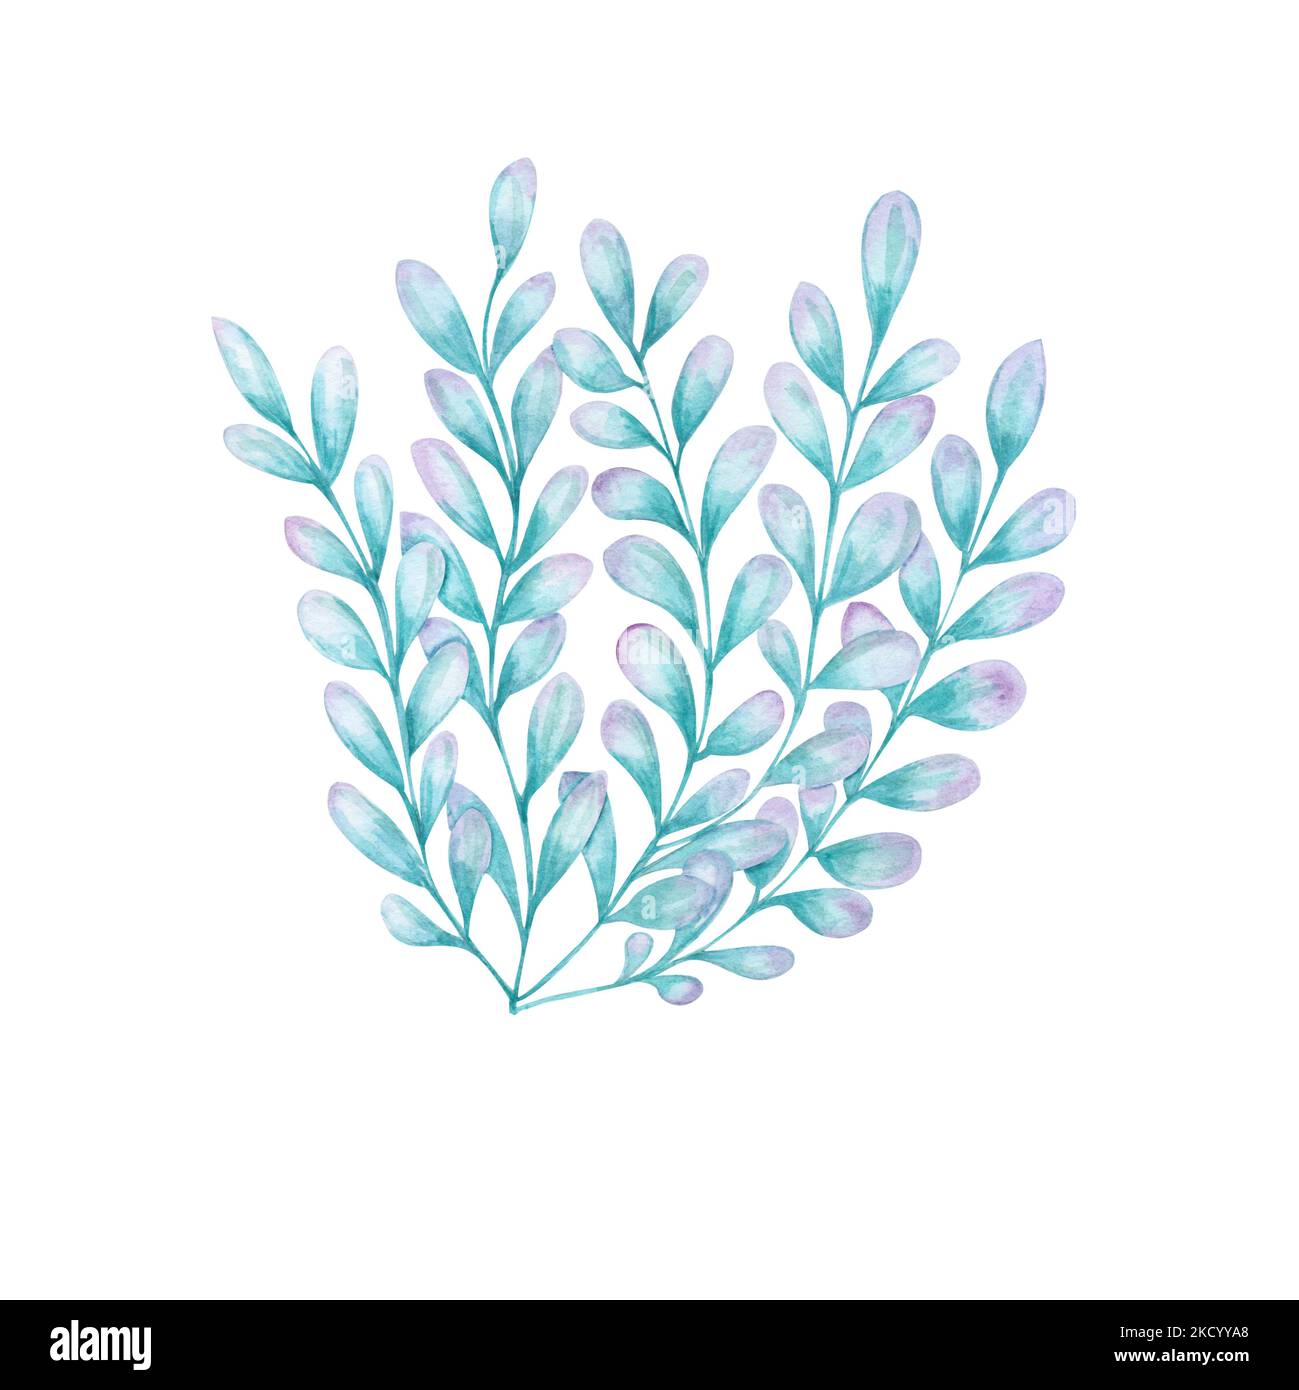 Acquerello illustrazione della flora marina. Illustrazione floreale subacquea dipinta a mano con alghe isolate su sfondo bianco. Stampare il poster di progettazione Foto Stock